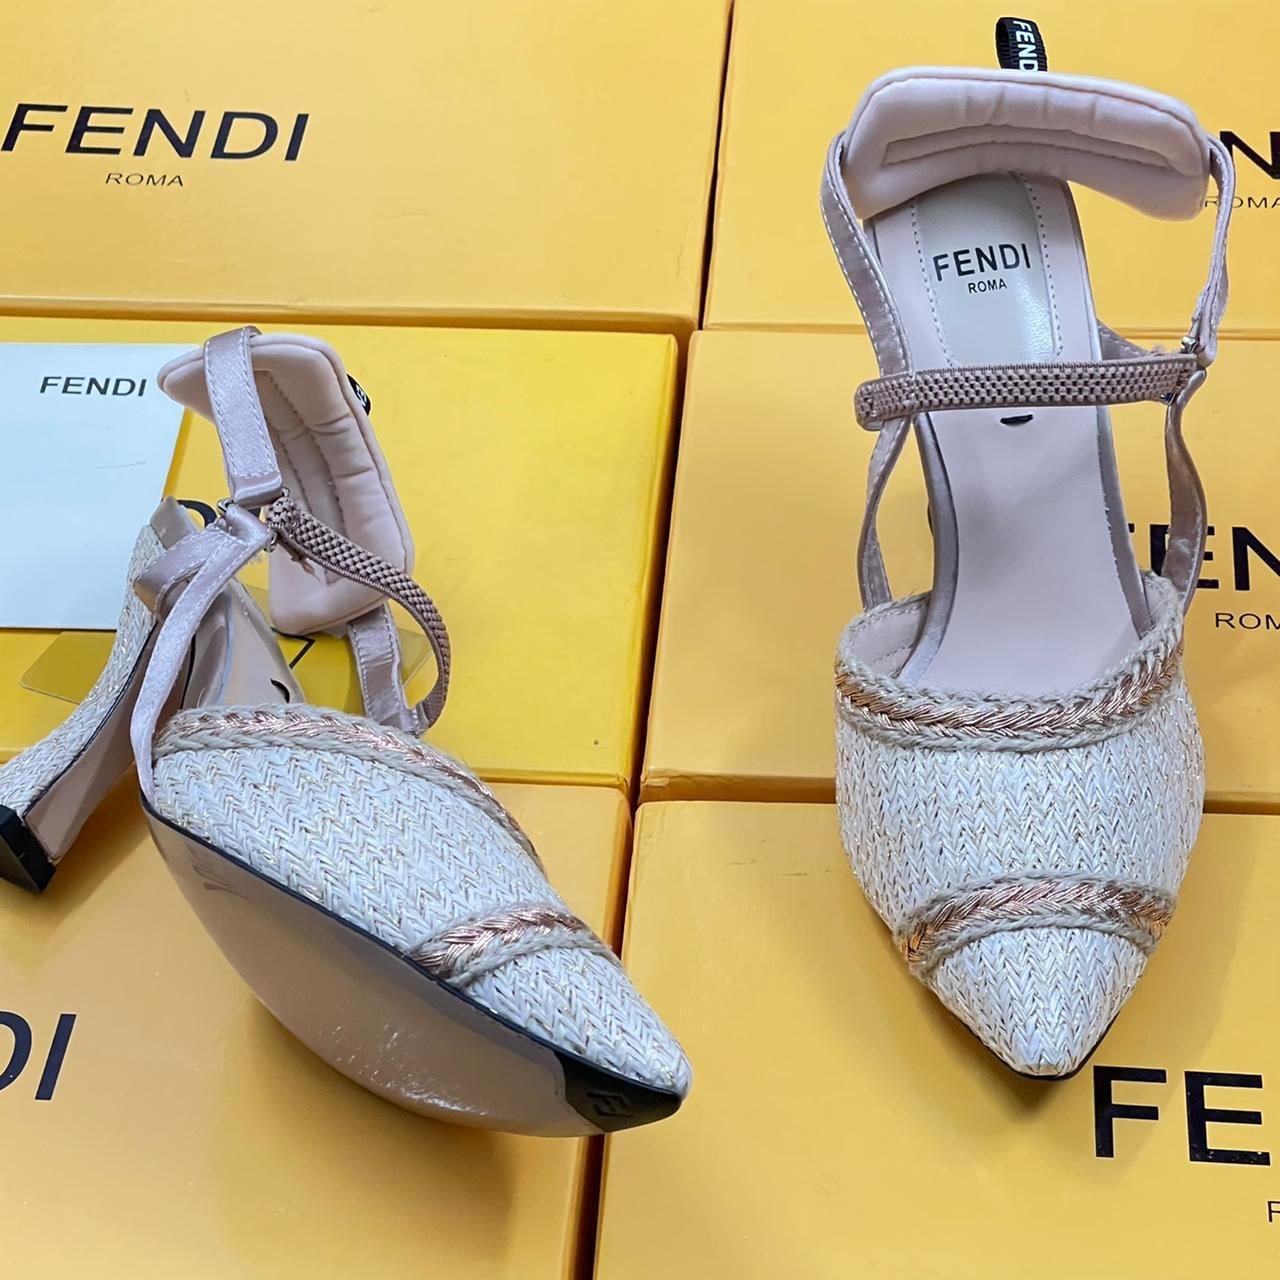 Fendi Women's Footwear.